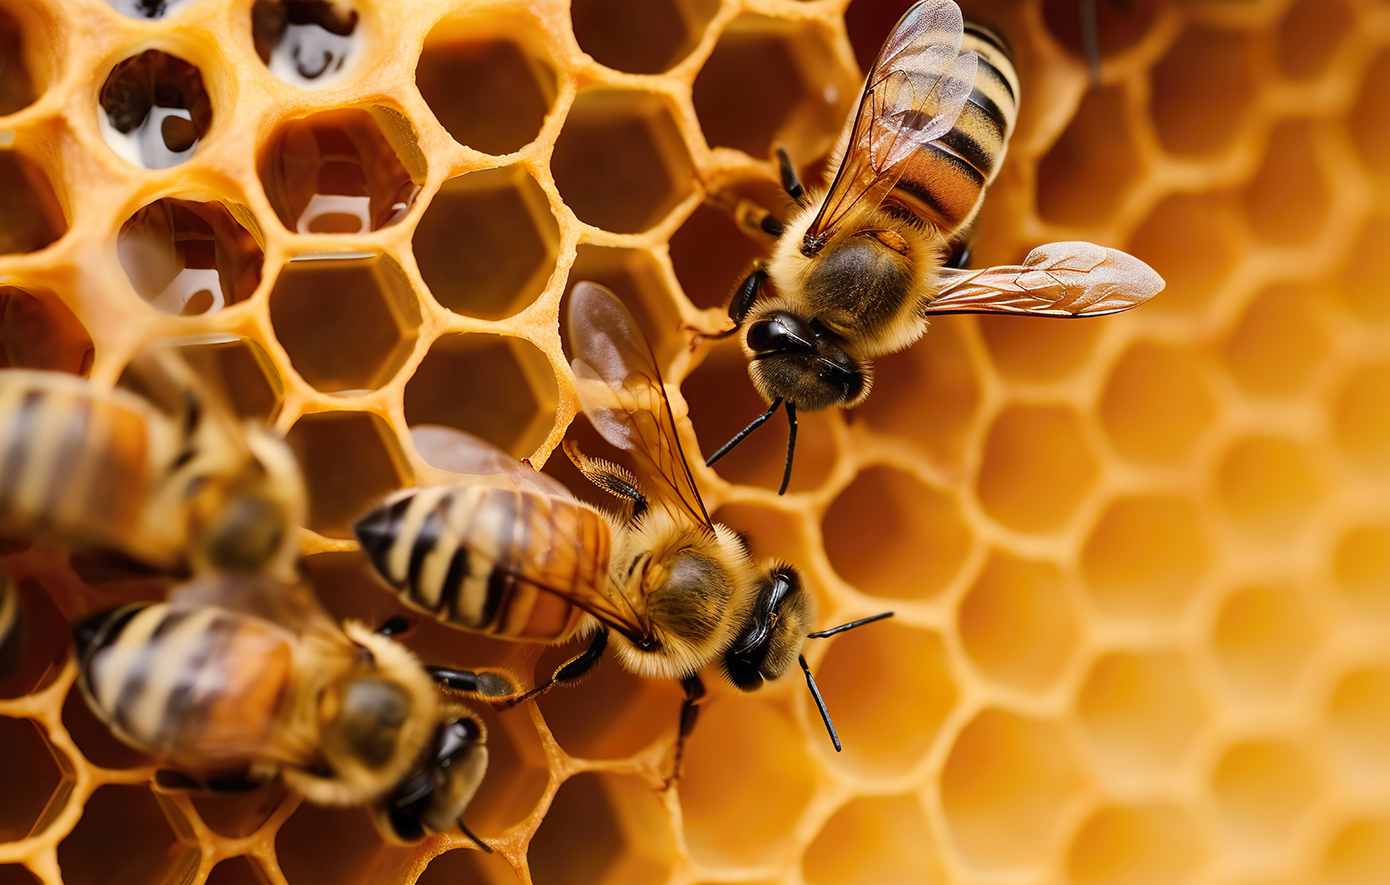 Αίσιο τέλος στην περιπέτεια των περιπατητών που δέχθηκαν επίθεση από μέλισσες